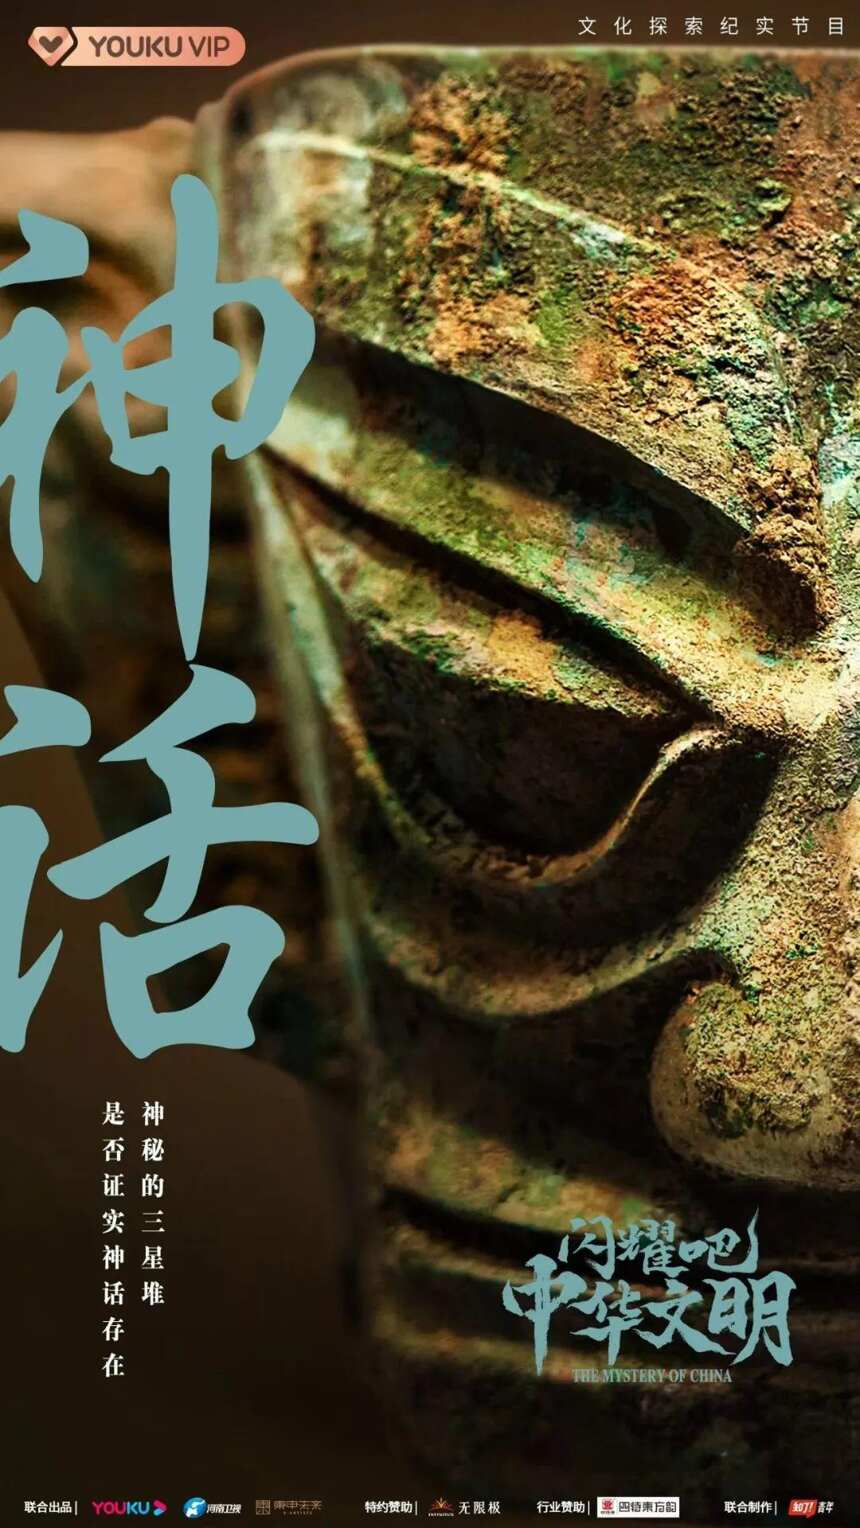 携手《闪耀吧！中华文明》,四特酒化身“追光者”开启文化考古之旅